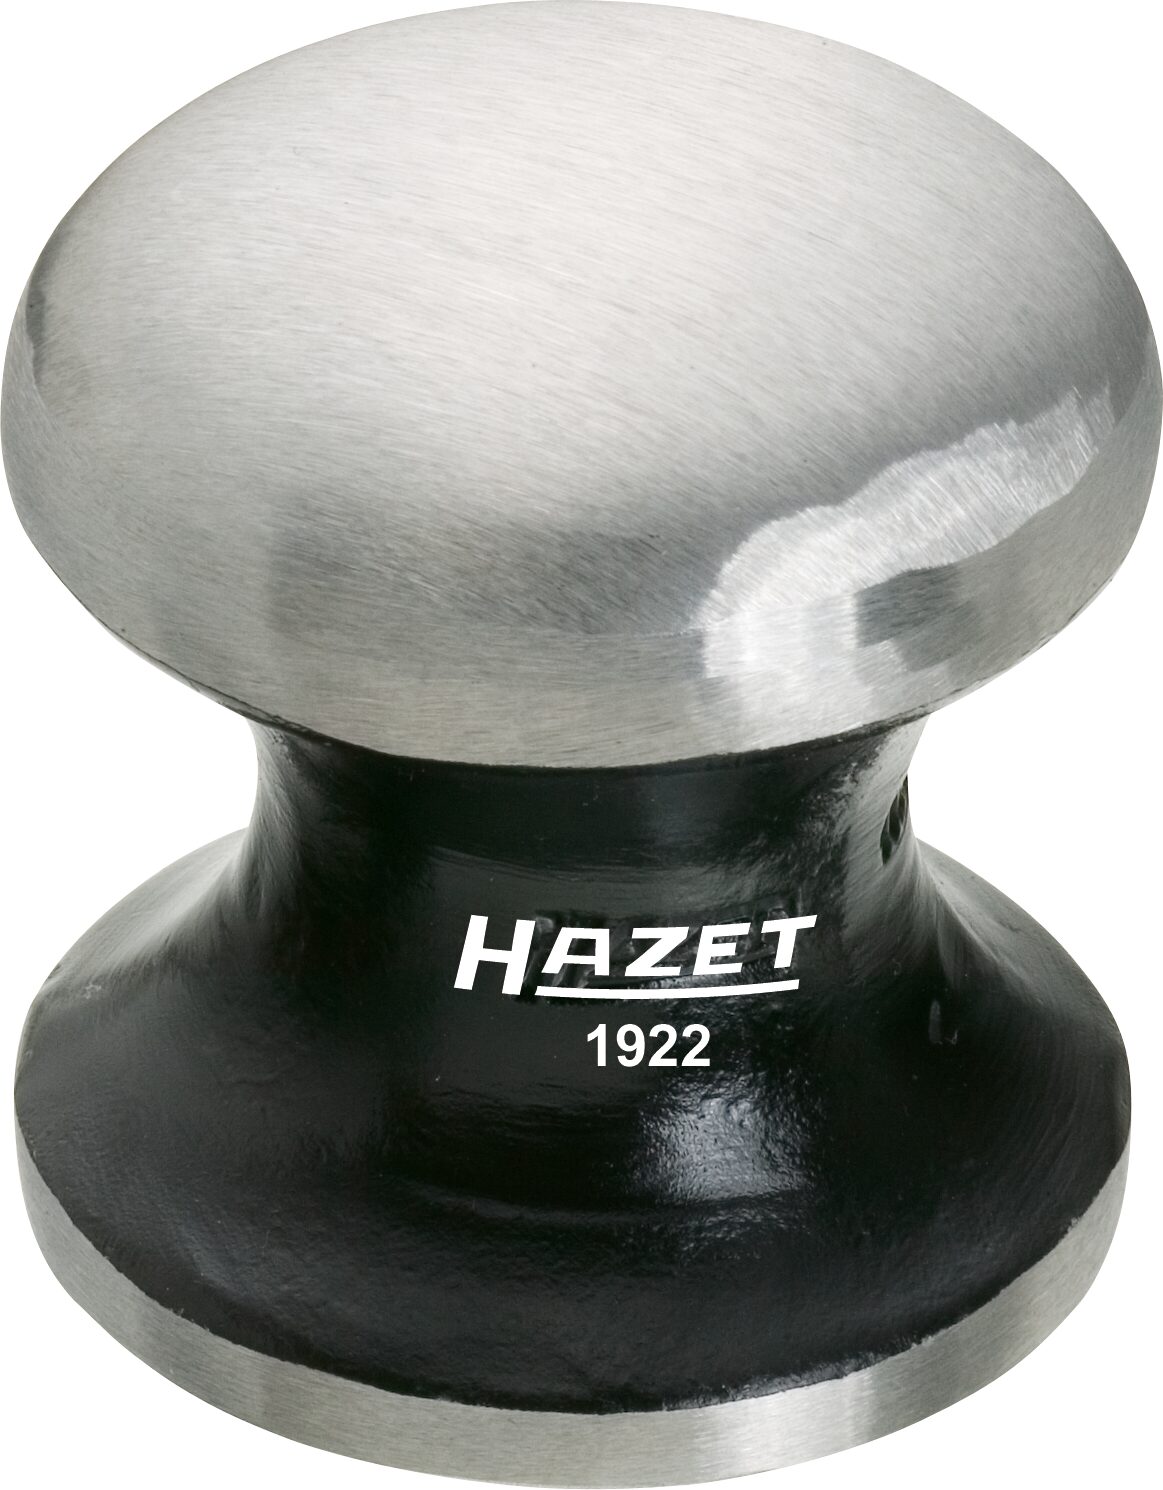 HAZET Handfaust 1922